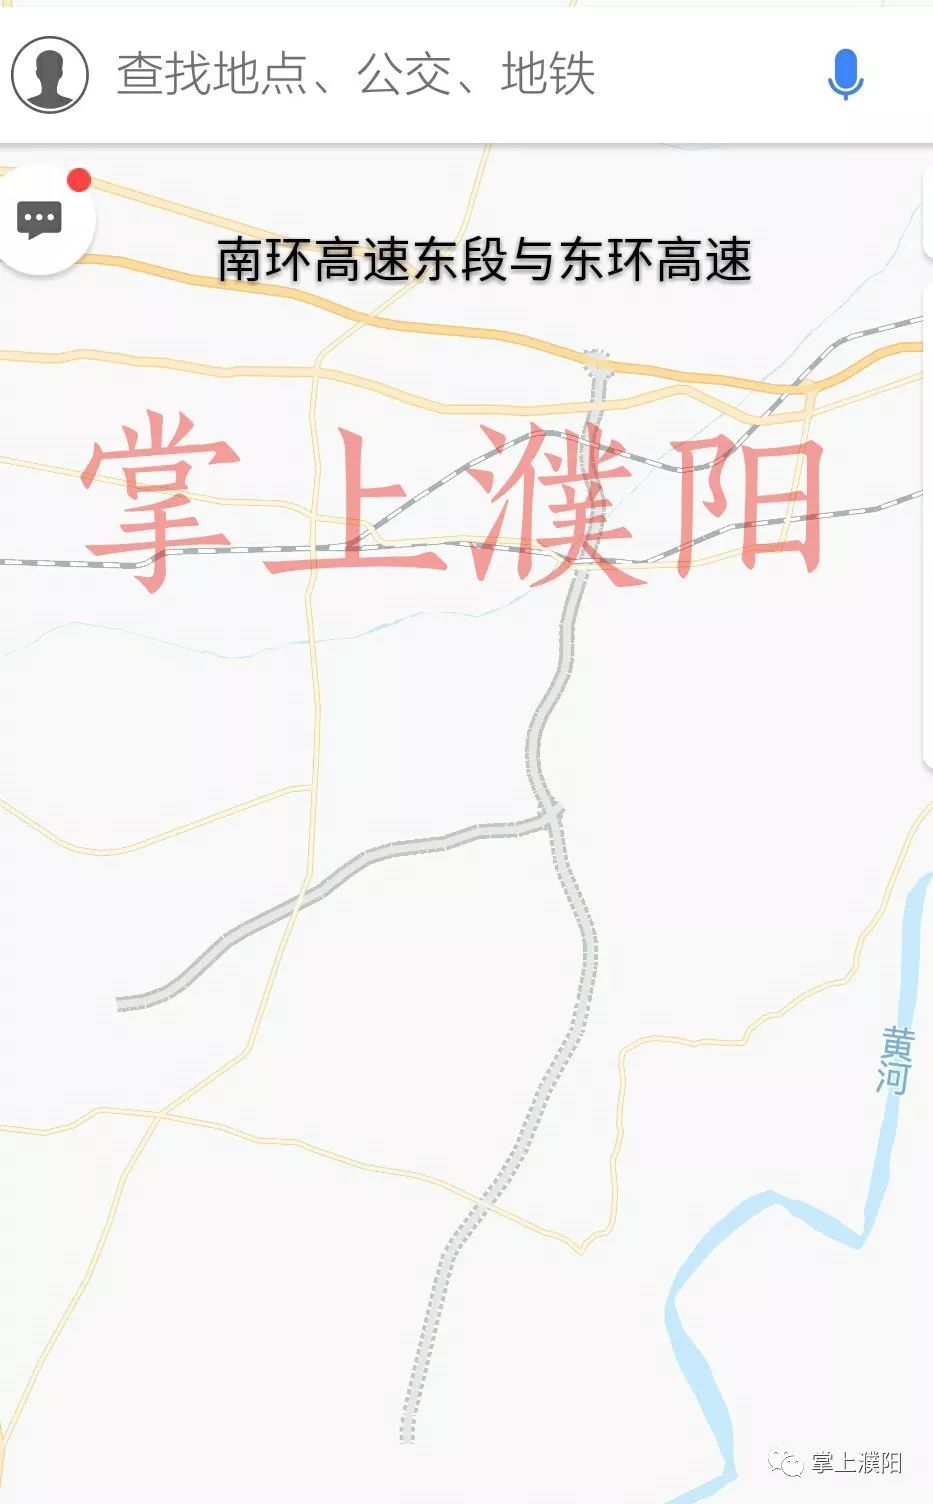 106国道出入口(濮阳北,濮范台高速),南环路出入口(濮阳南,大广高速)的